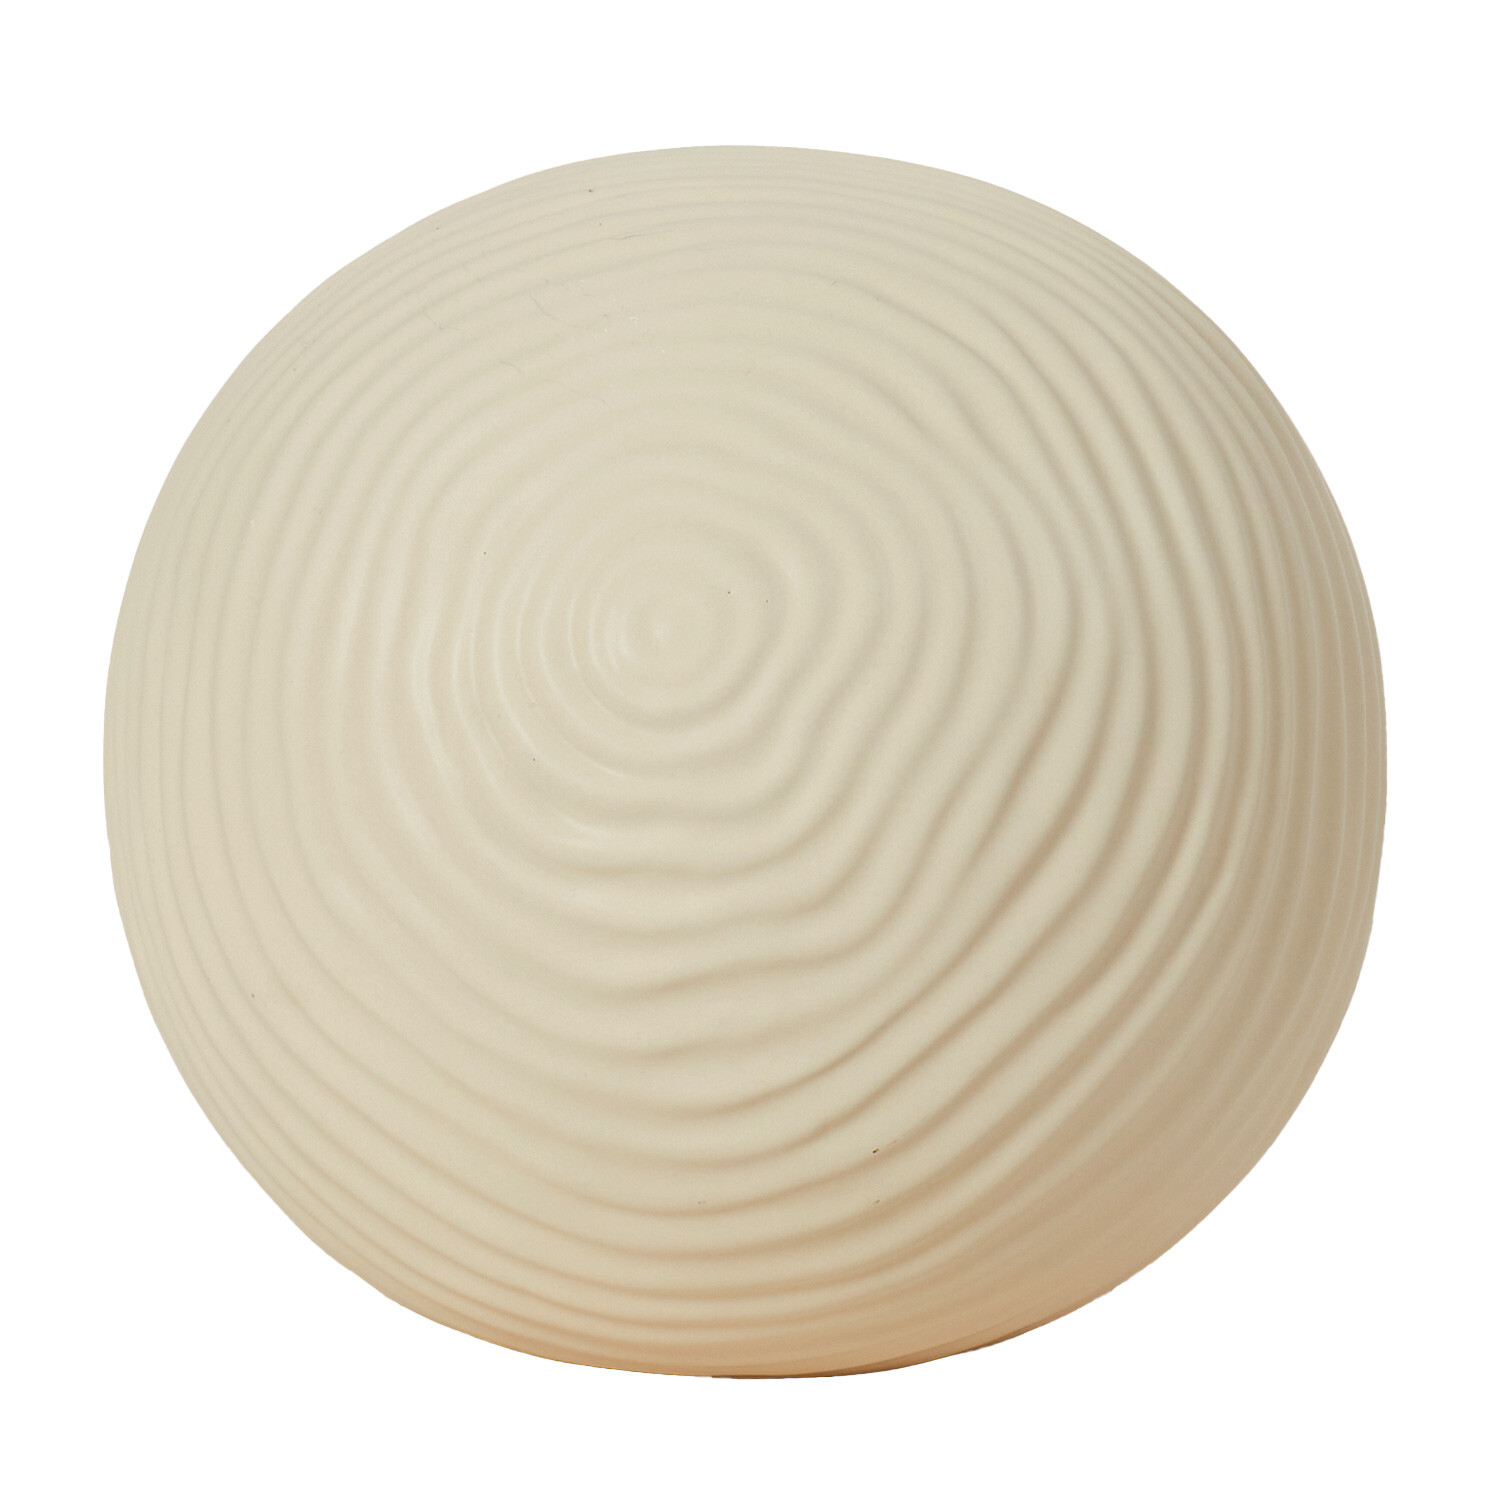 Cream Ceramic Ball - Cream / Small Image 2